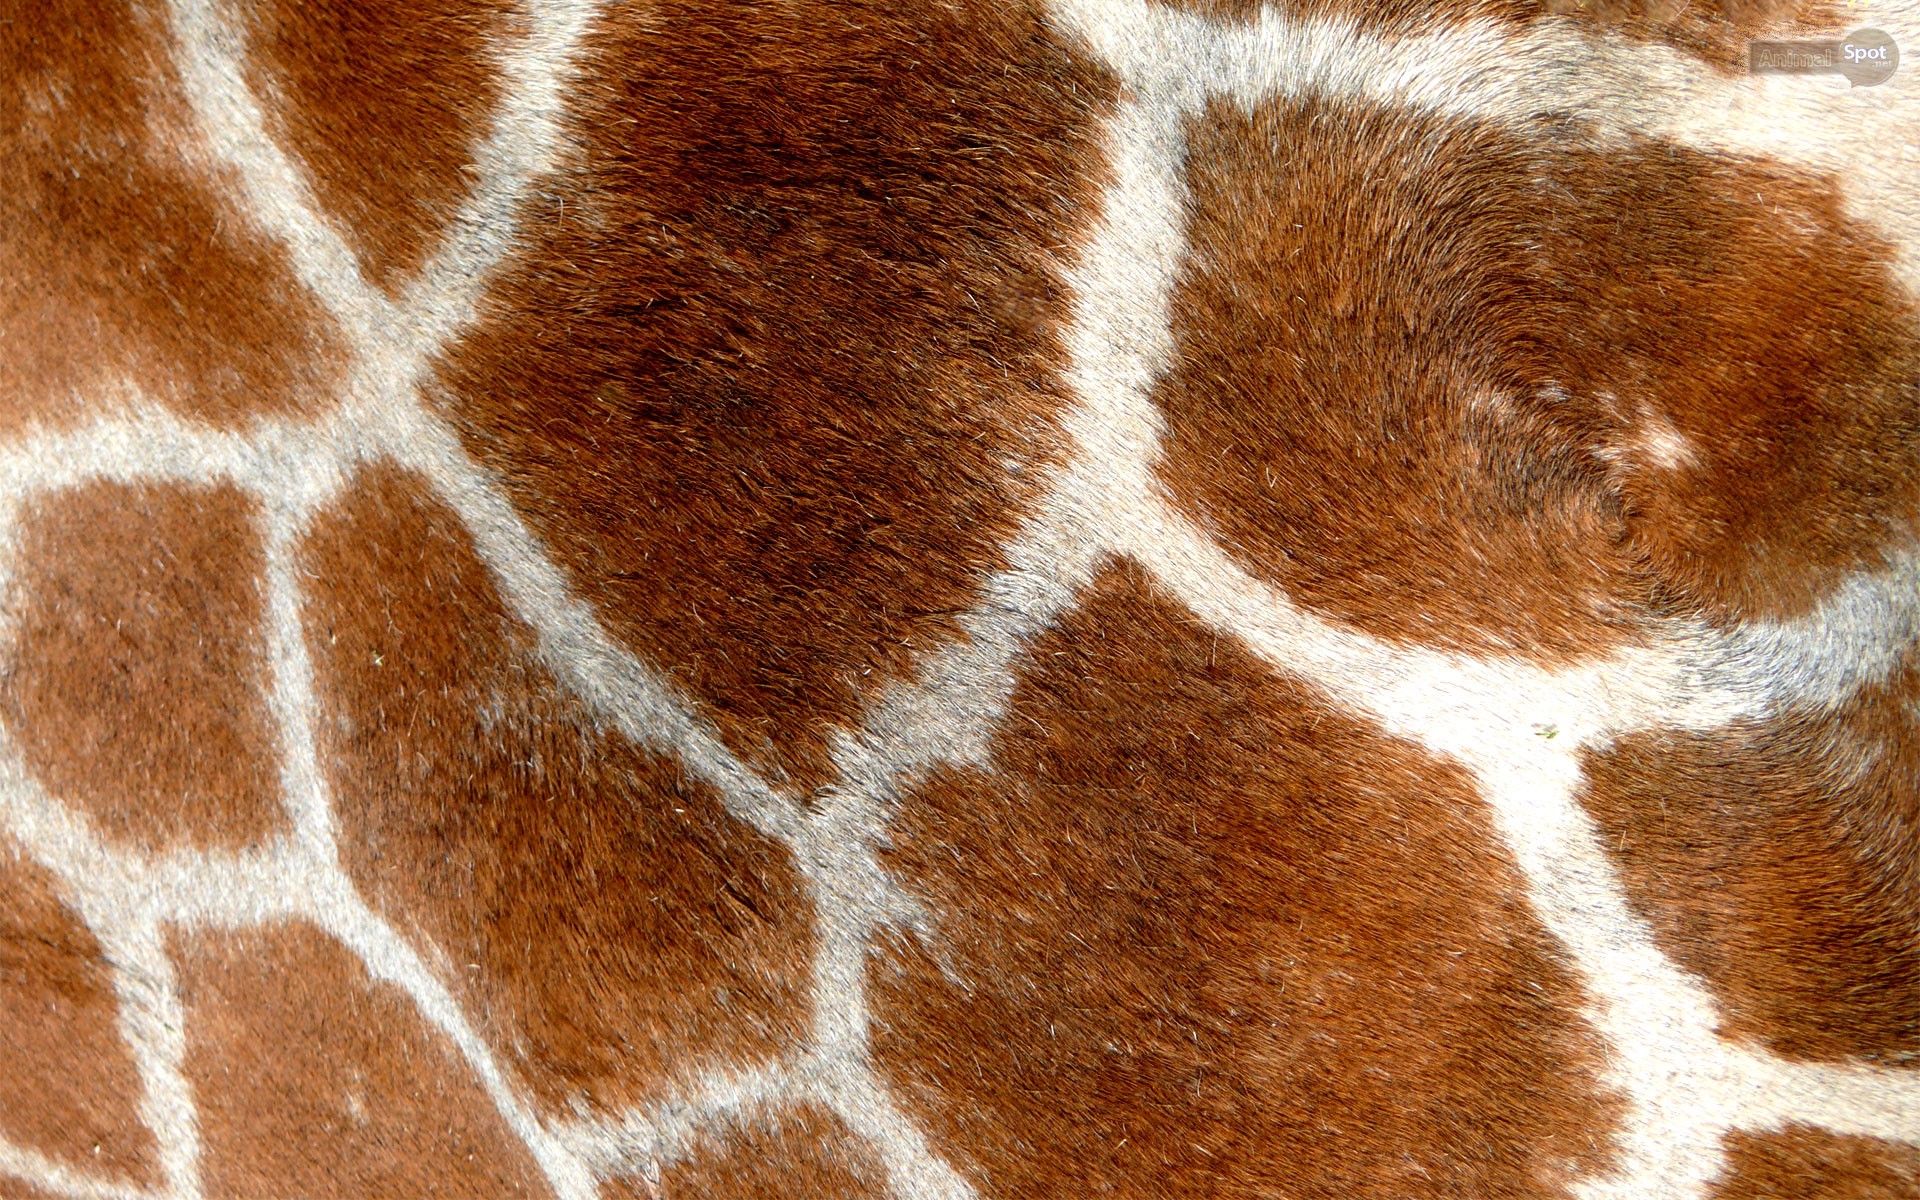 Giraffe Spots Up Close - HD Wallpaper 